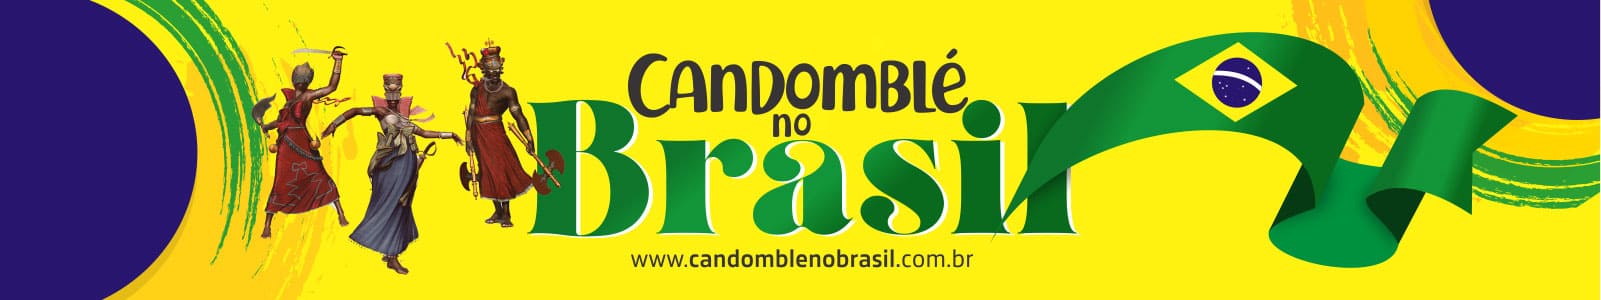 Candomblé no Brasil - Trabalhos Espirituais